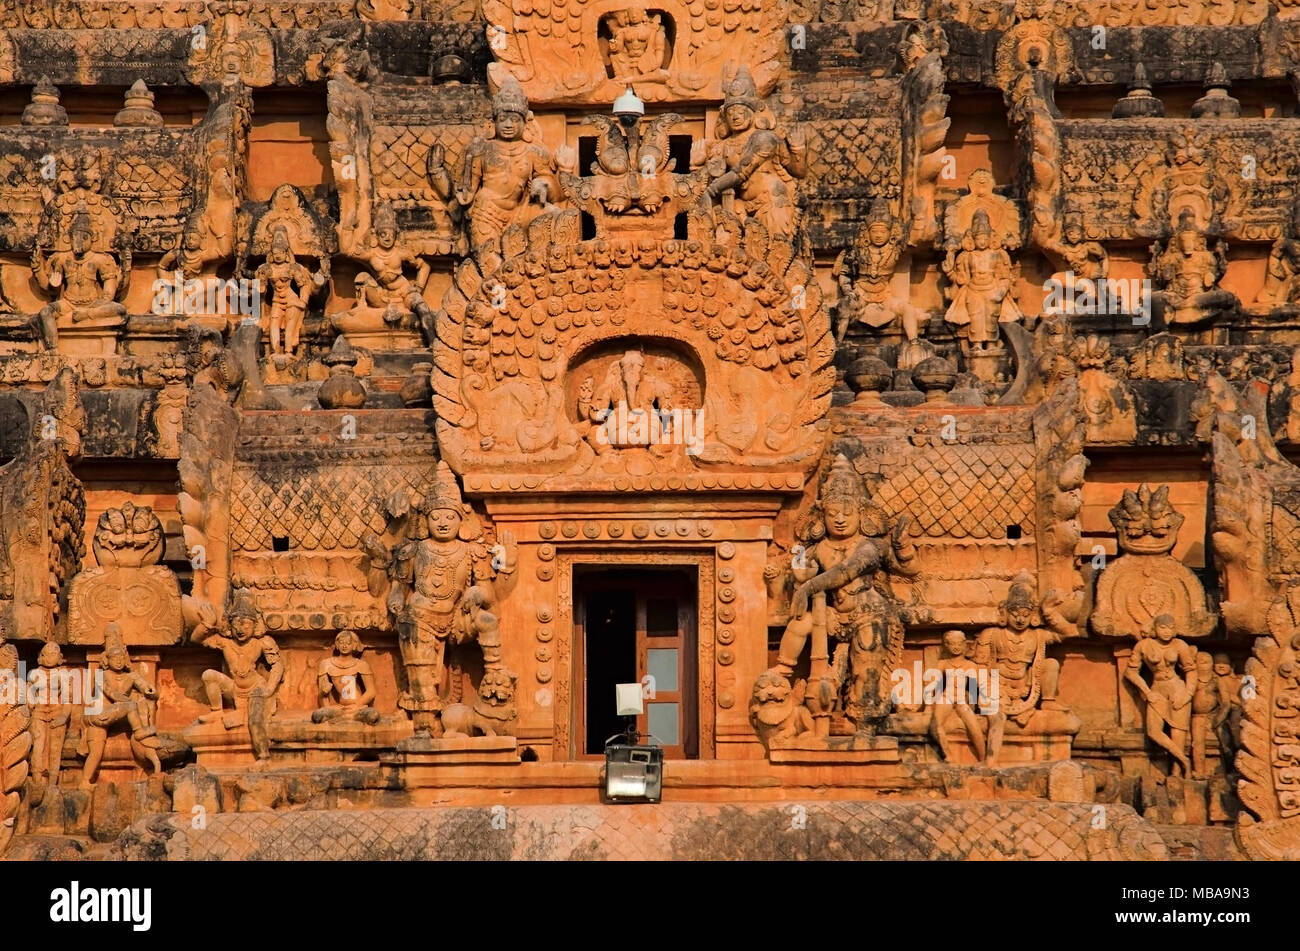 Carved stone Gopuram of the Brihadisvara Temple, Thanjavur, Tamil Nadu, India. Hindu temple dedicated to Lord Shiva Stock Photo